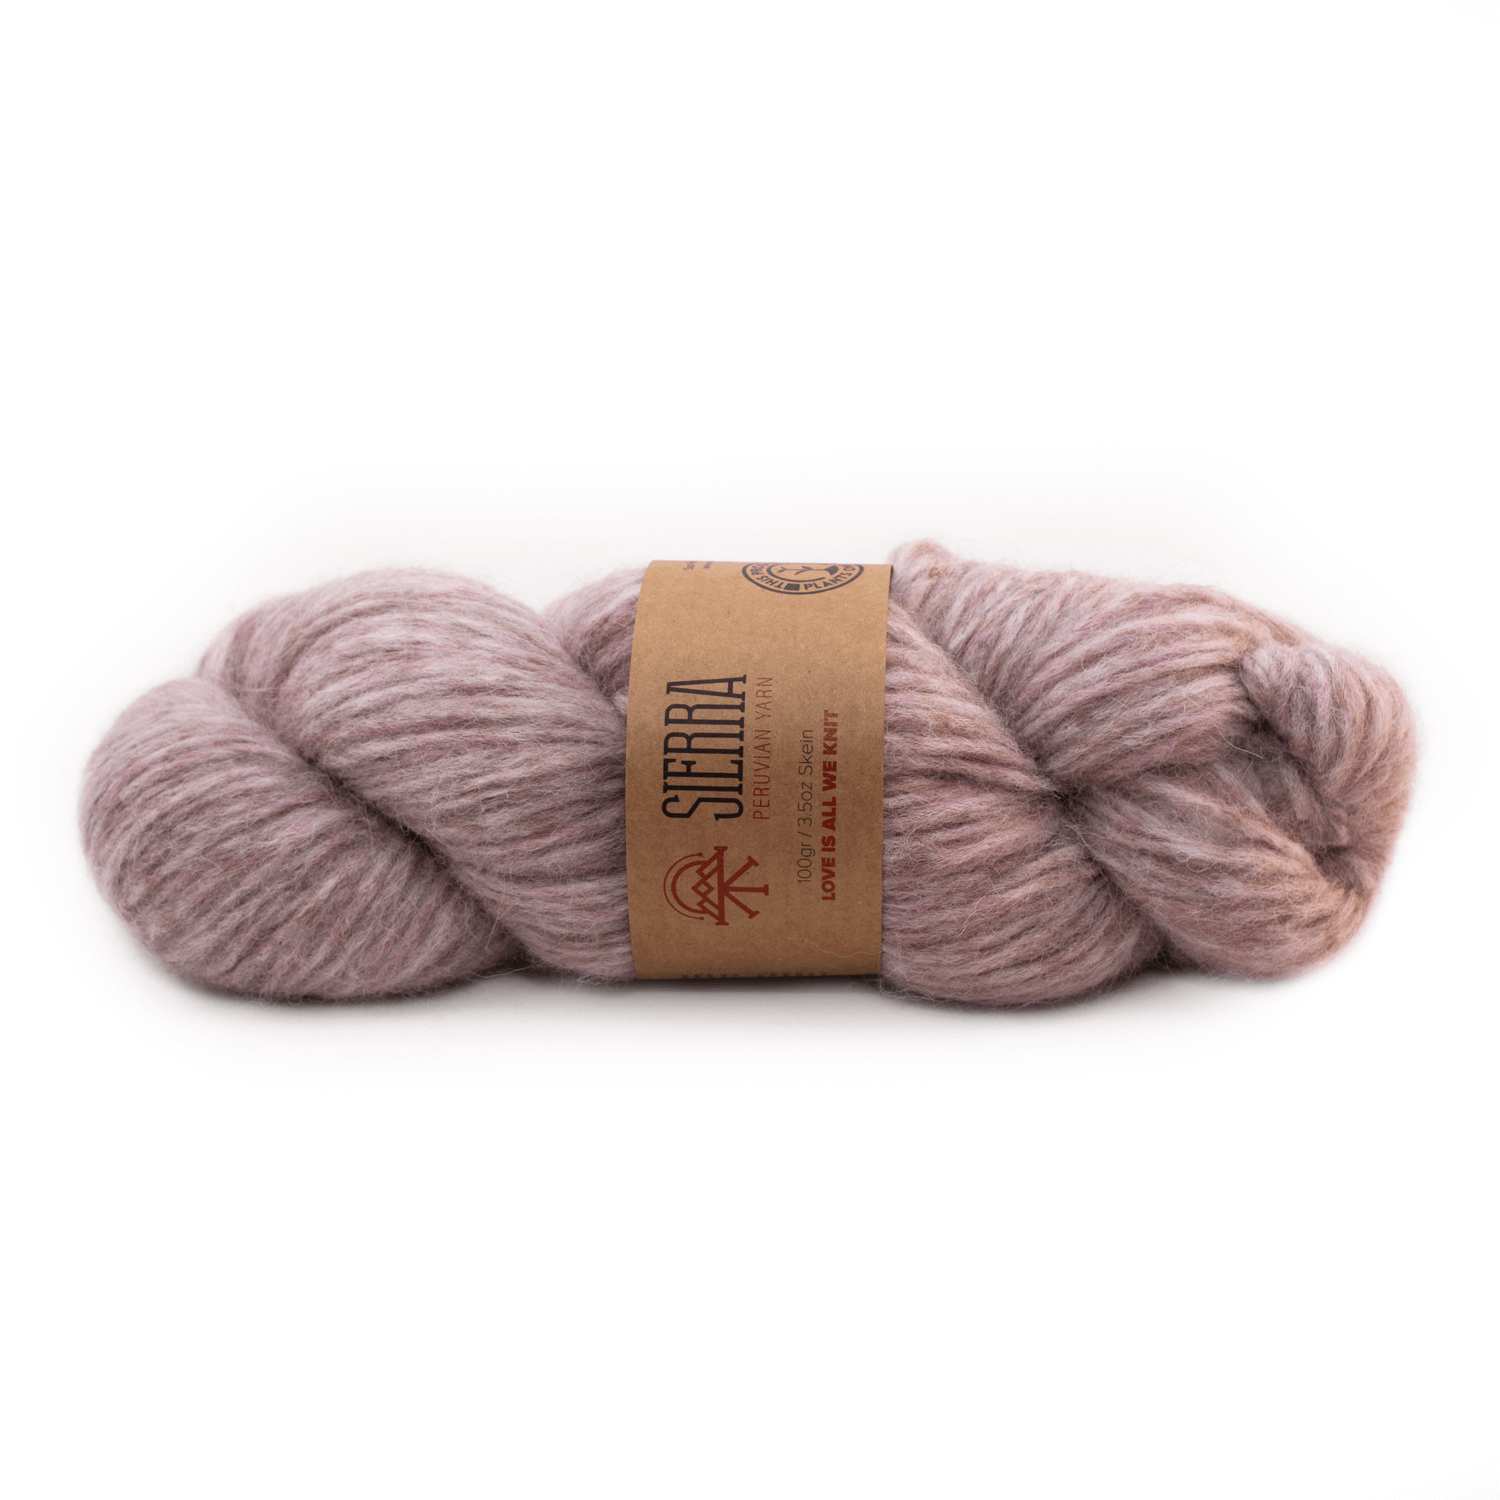 Alpaca Rose Light pullover Knitting Kit